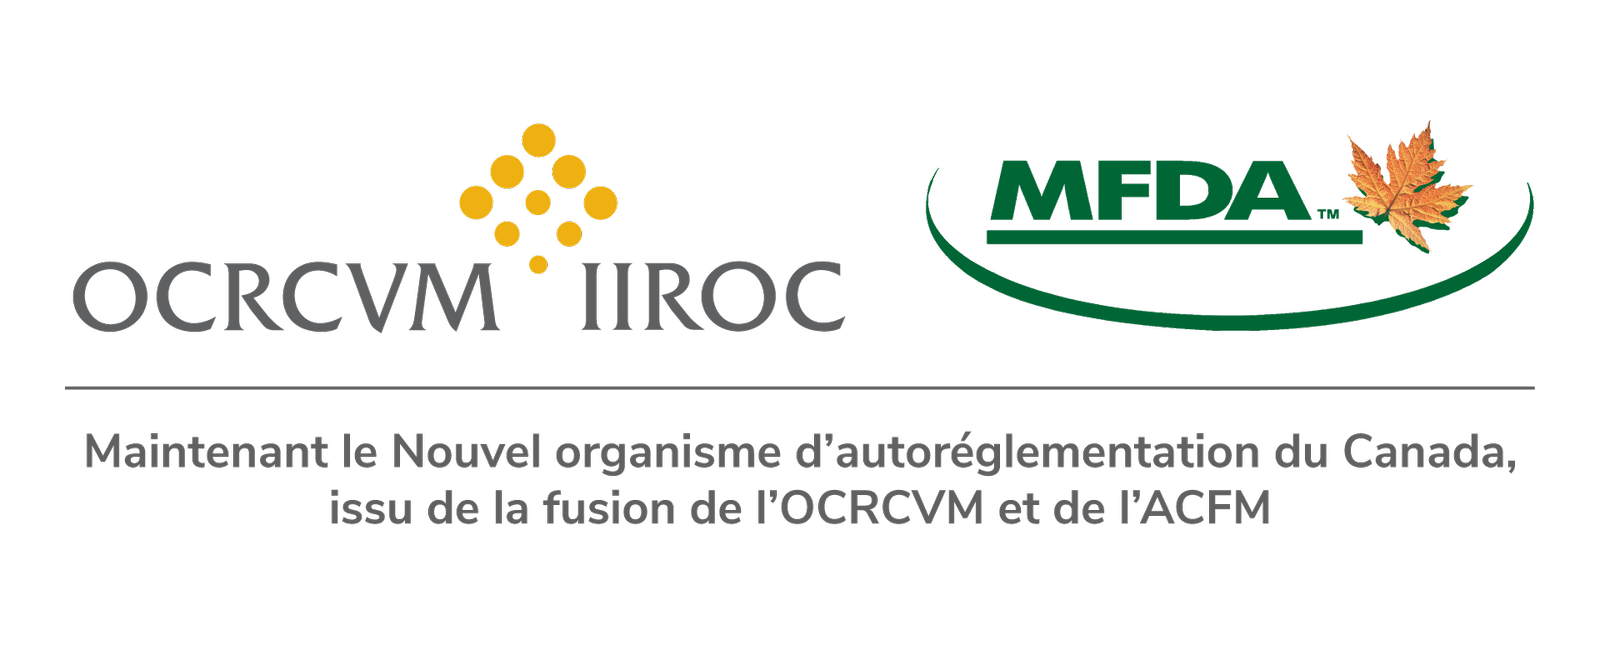 Logos de l'OCRCVM et de l'ACFM